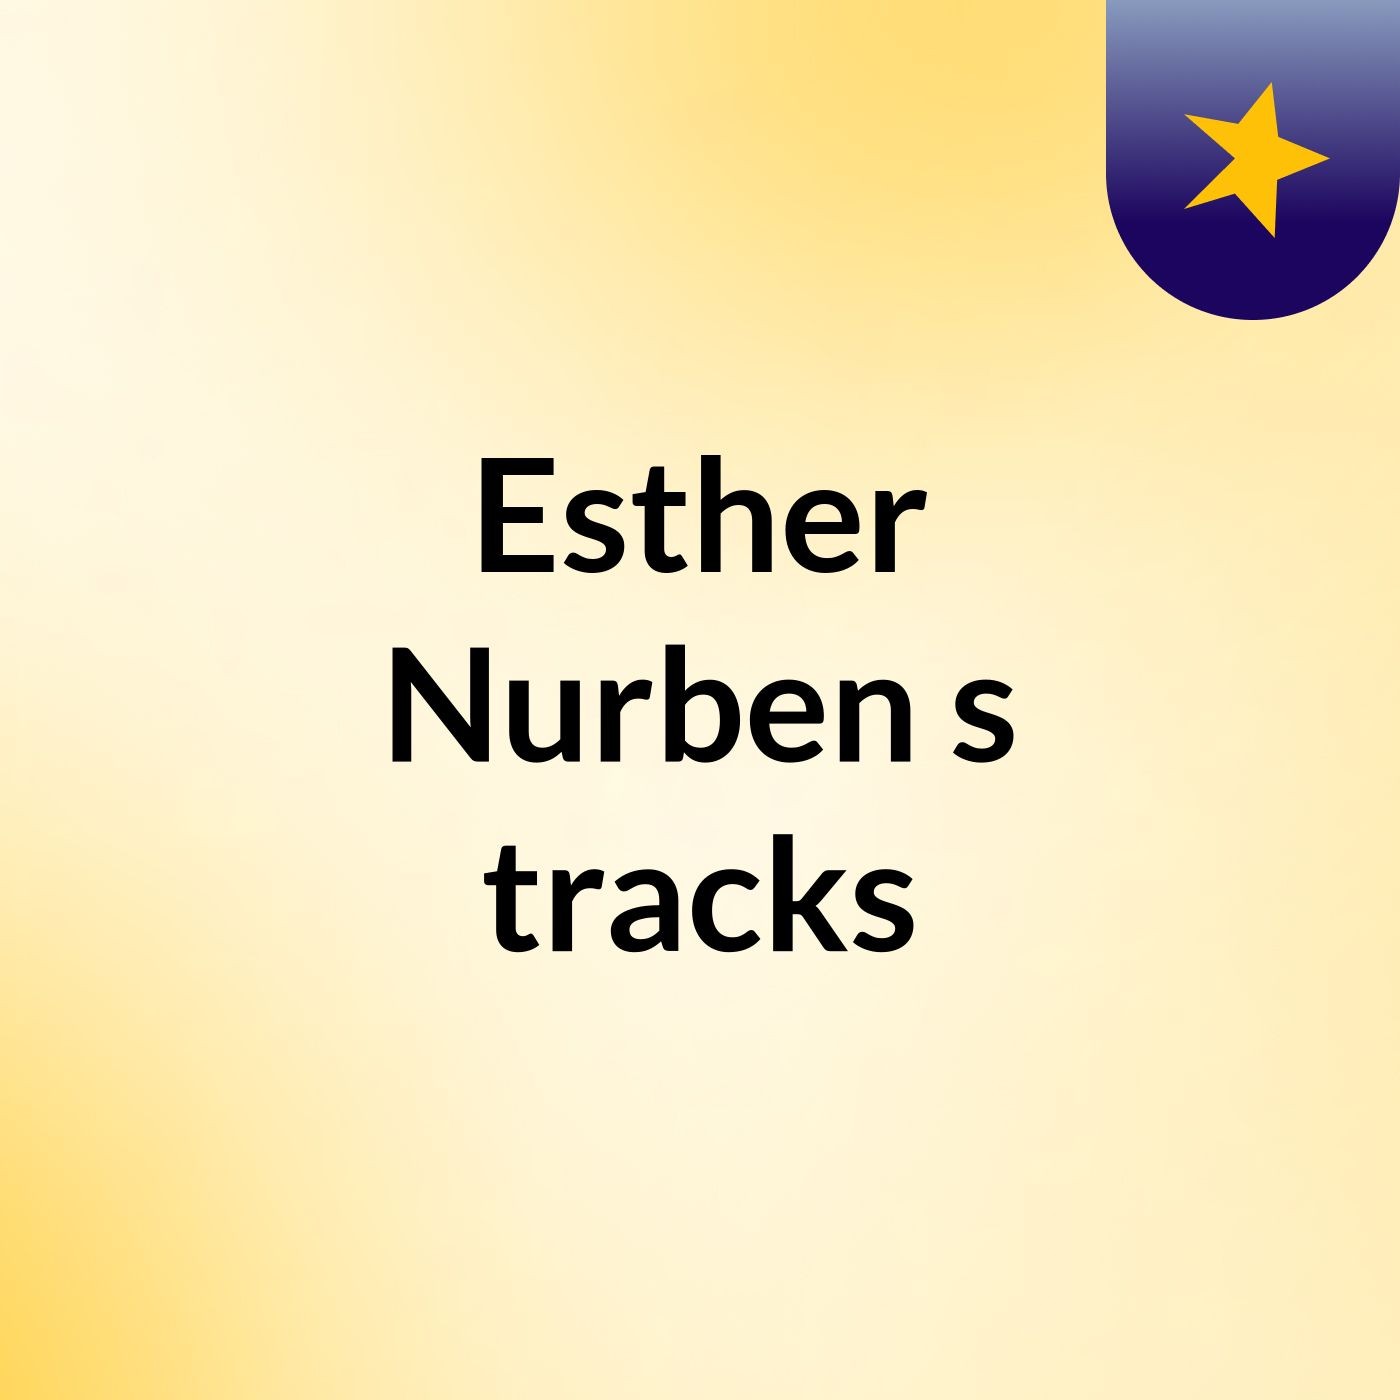 Esther Nurben's tracks